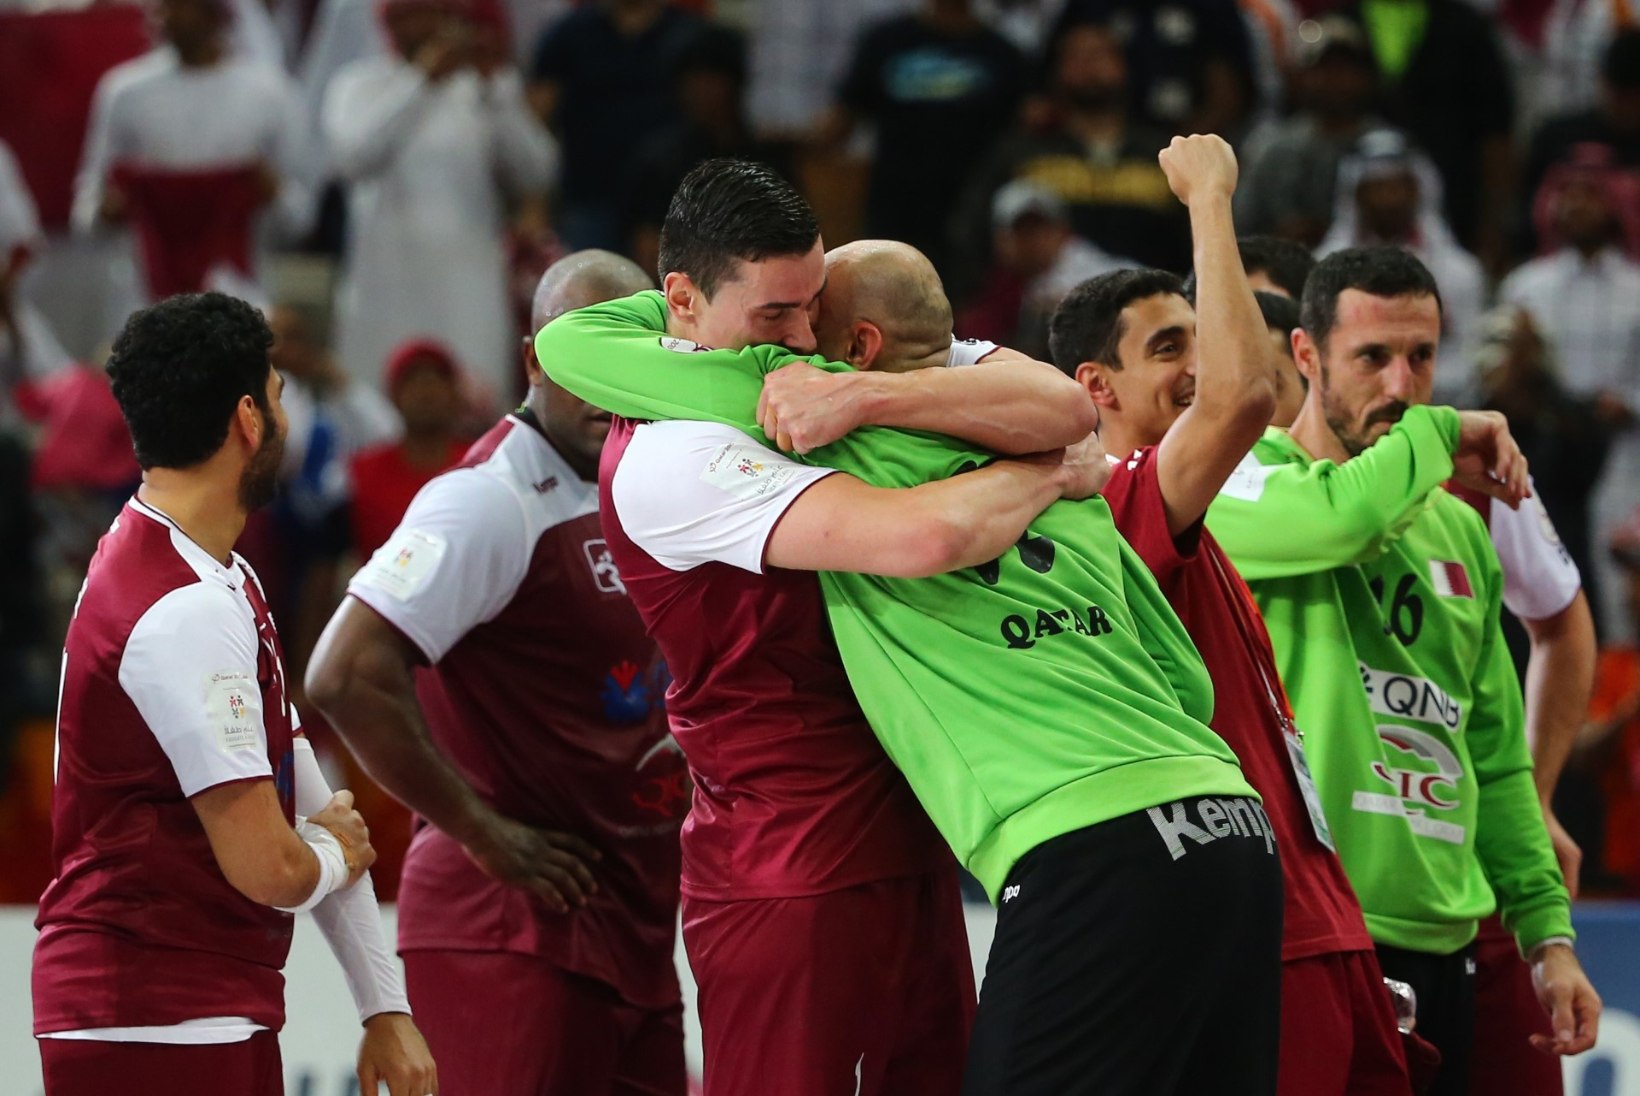 Käsipalli maailmameistri selgitavad Prantsusmaa ja... Katar!